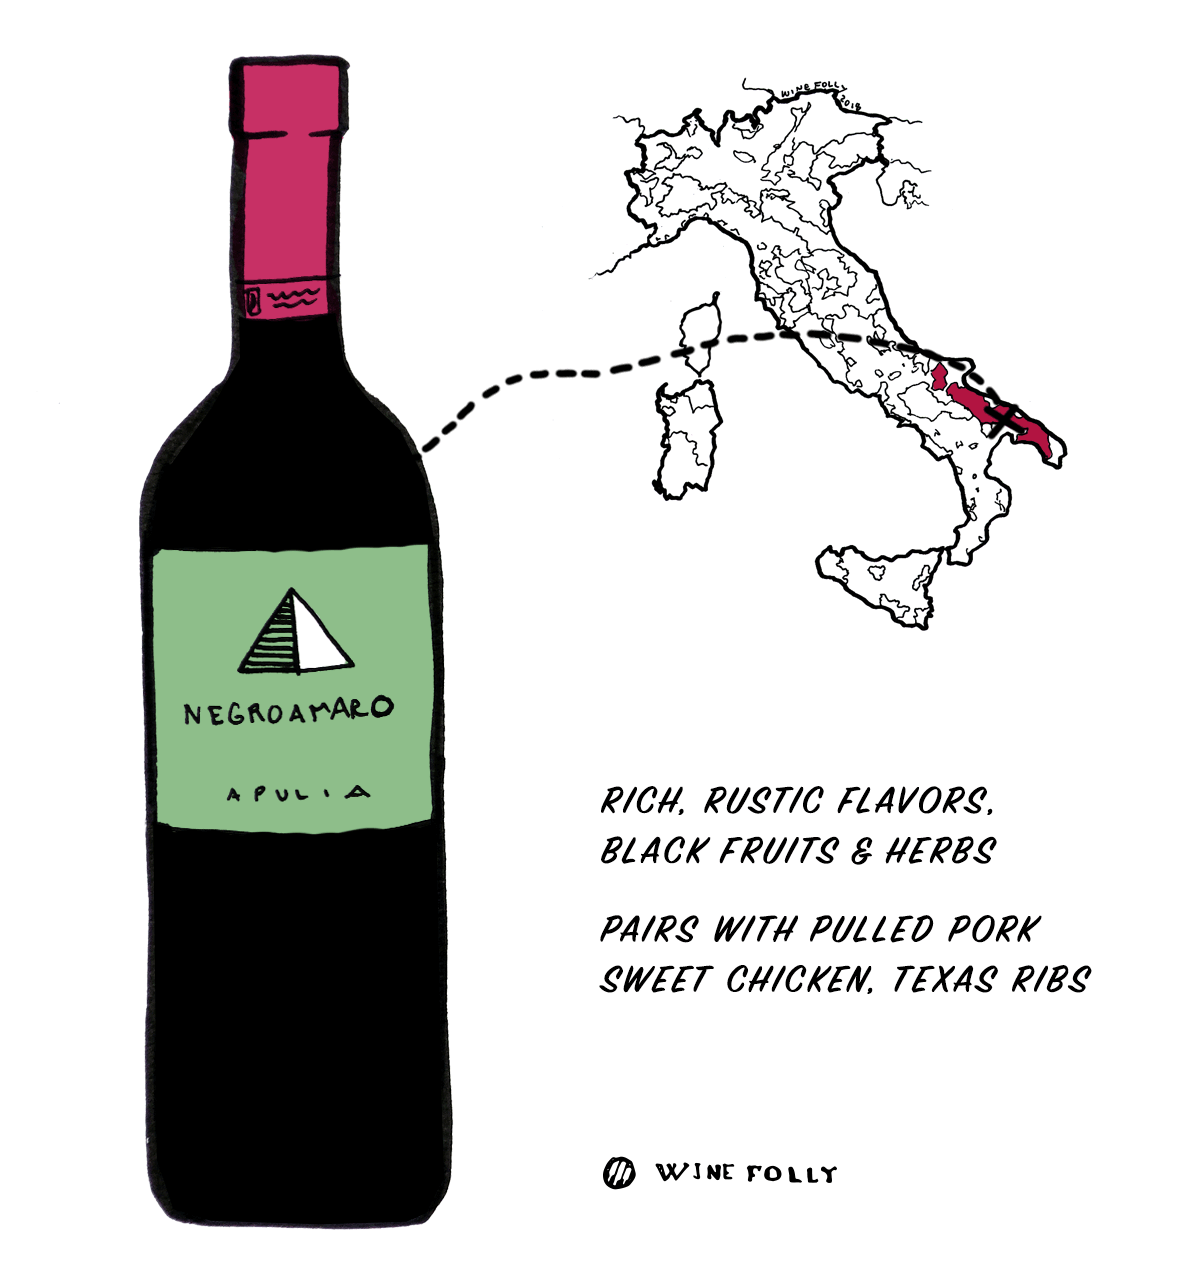 ענב יין אדום נגרו-אמארו מאיטליה - בחירה מצוינת למתחילים ליין איטלקי - איור מאת Wine Folly